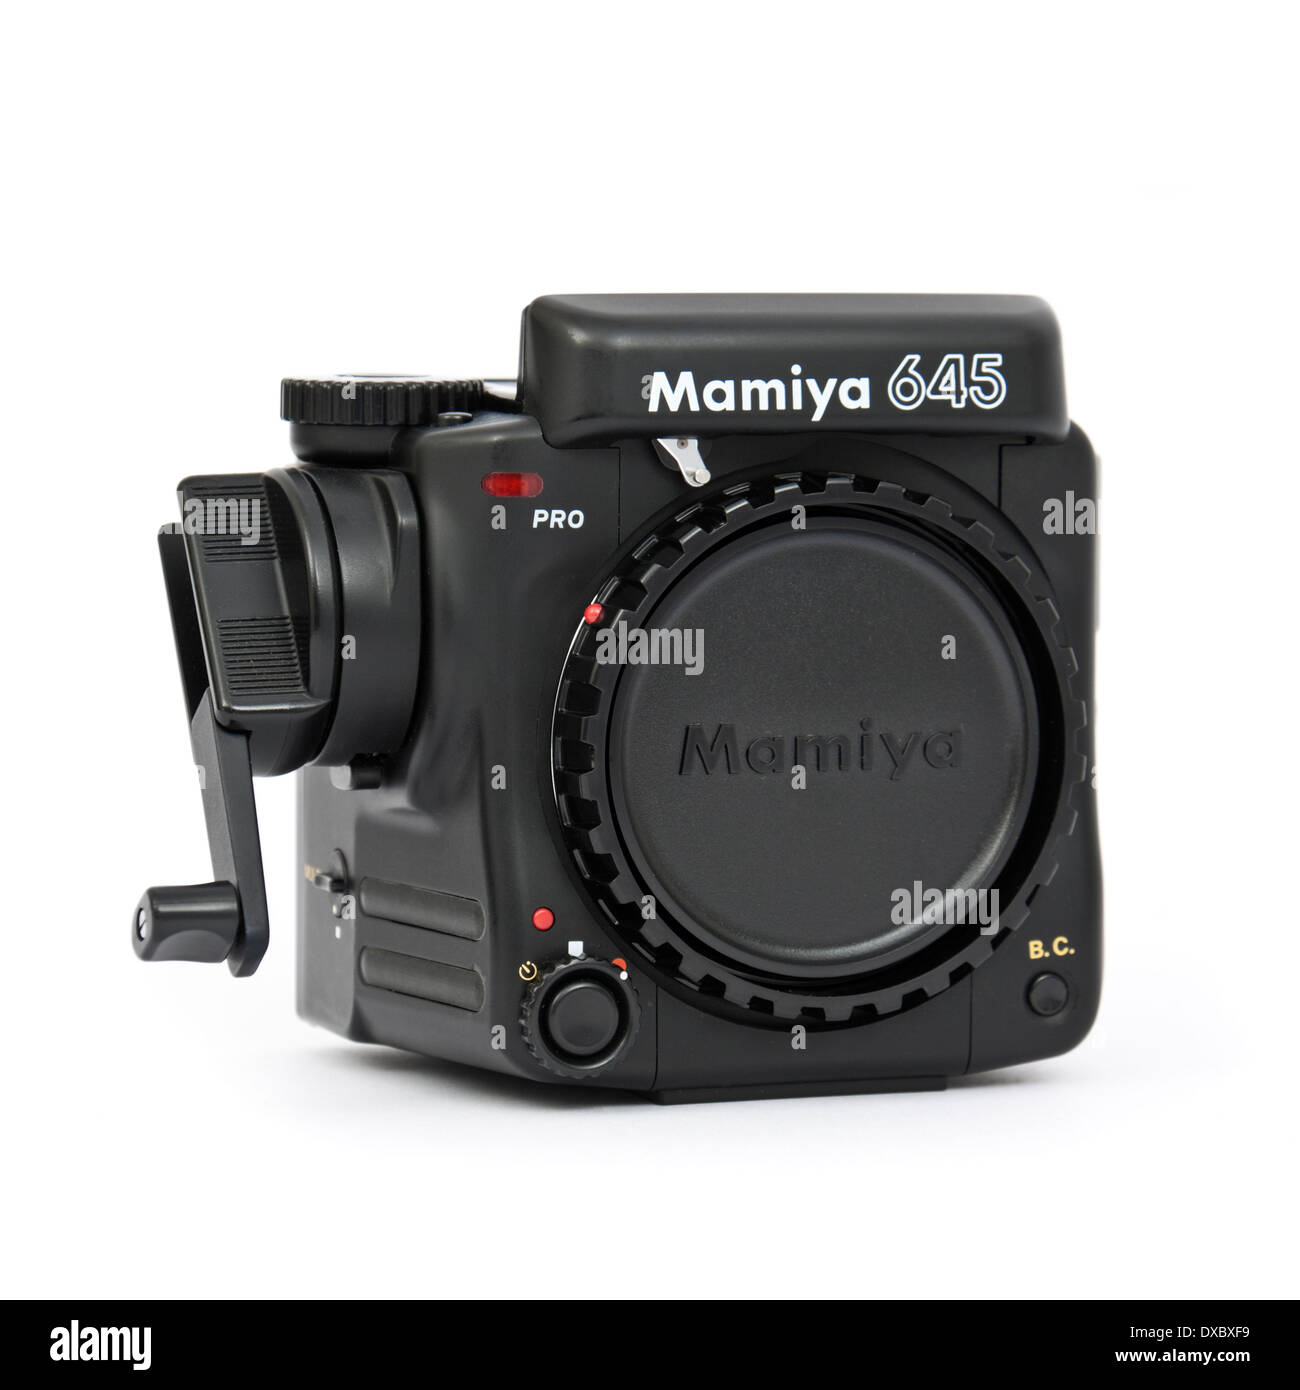 Mamiya 645 Pro professionelle Mittelformat-Film-Kamera, in der Produktion  zwischen 1993 und 1998 Stockfotografie - Alamy